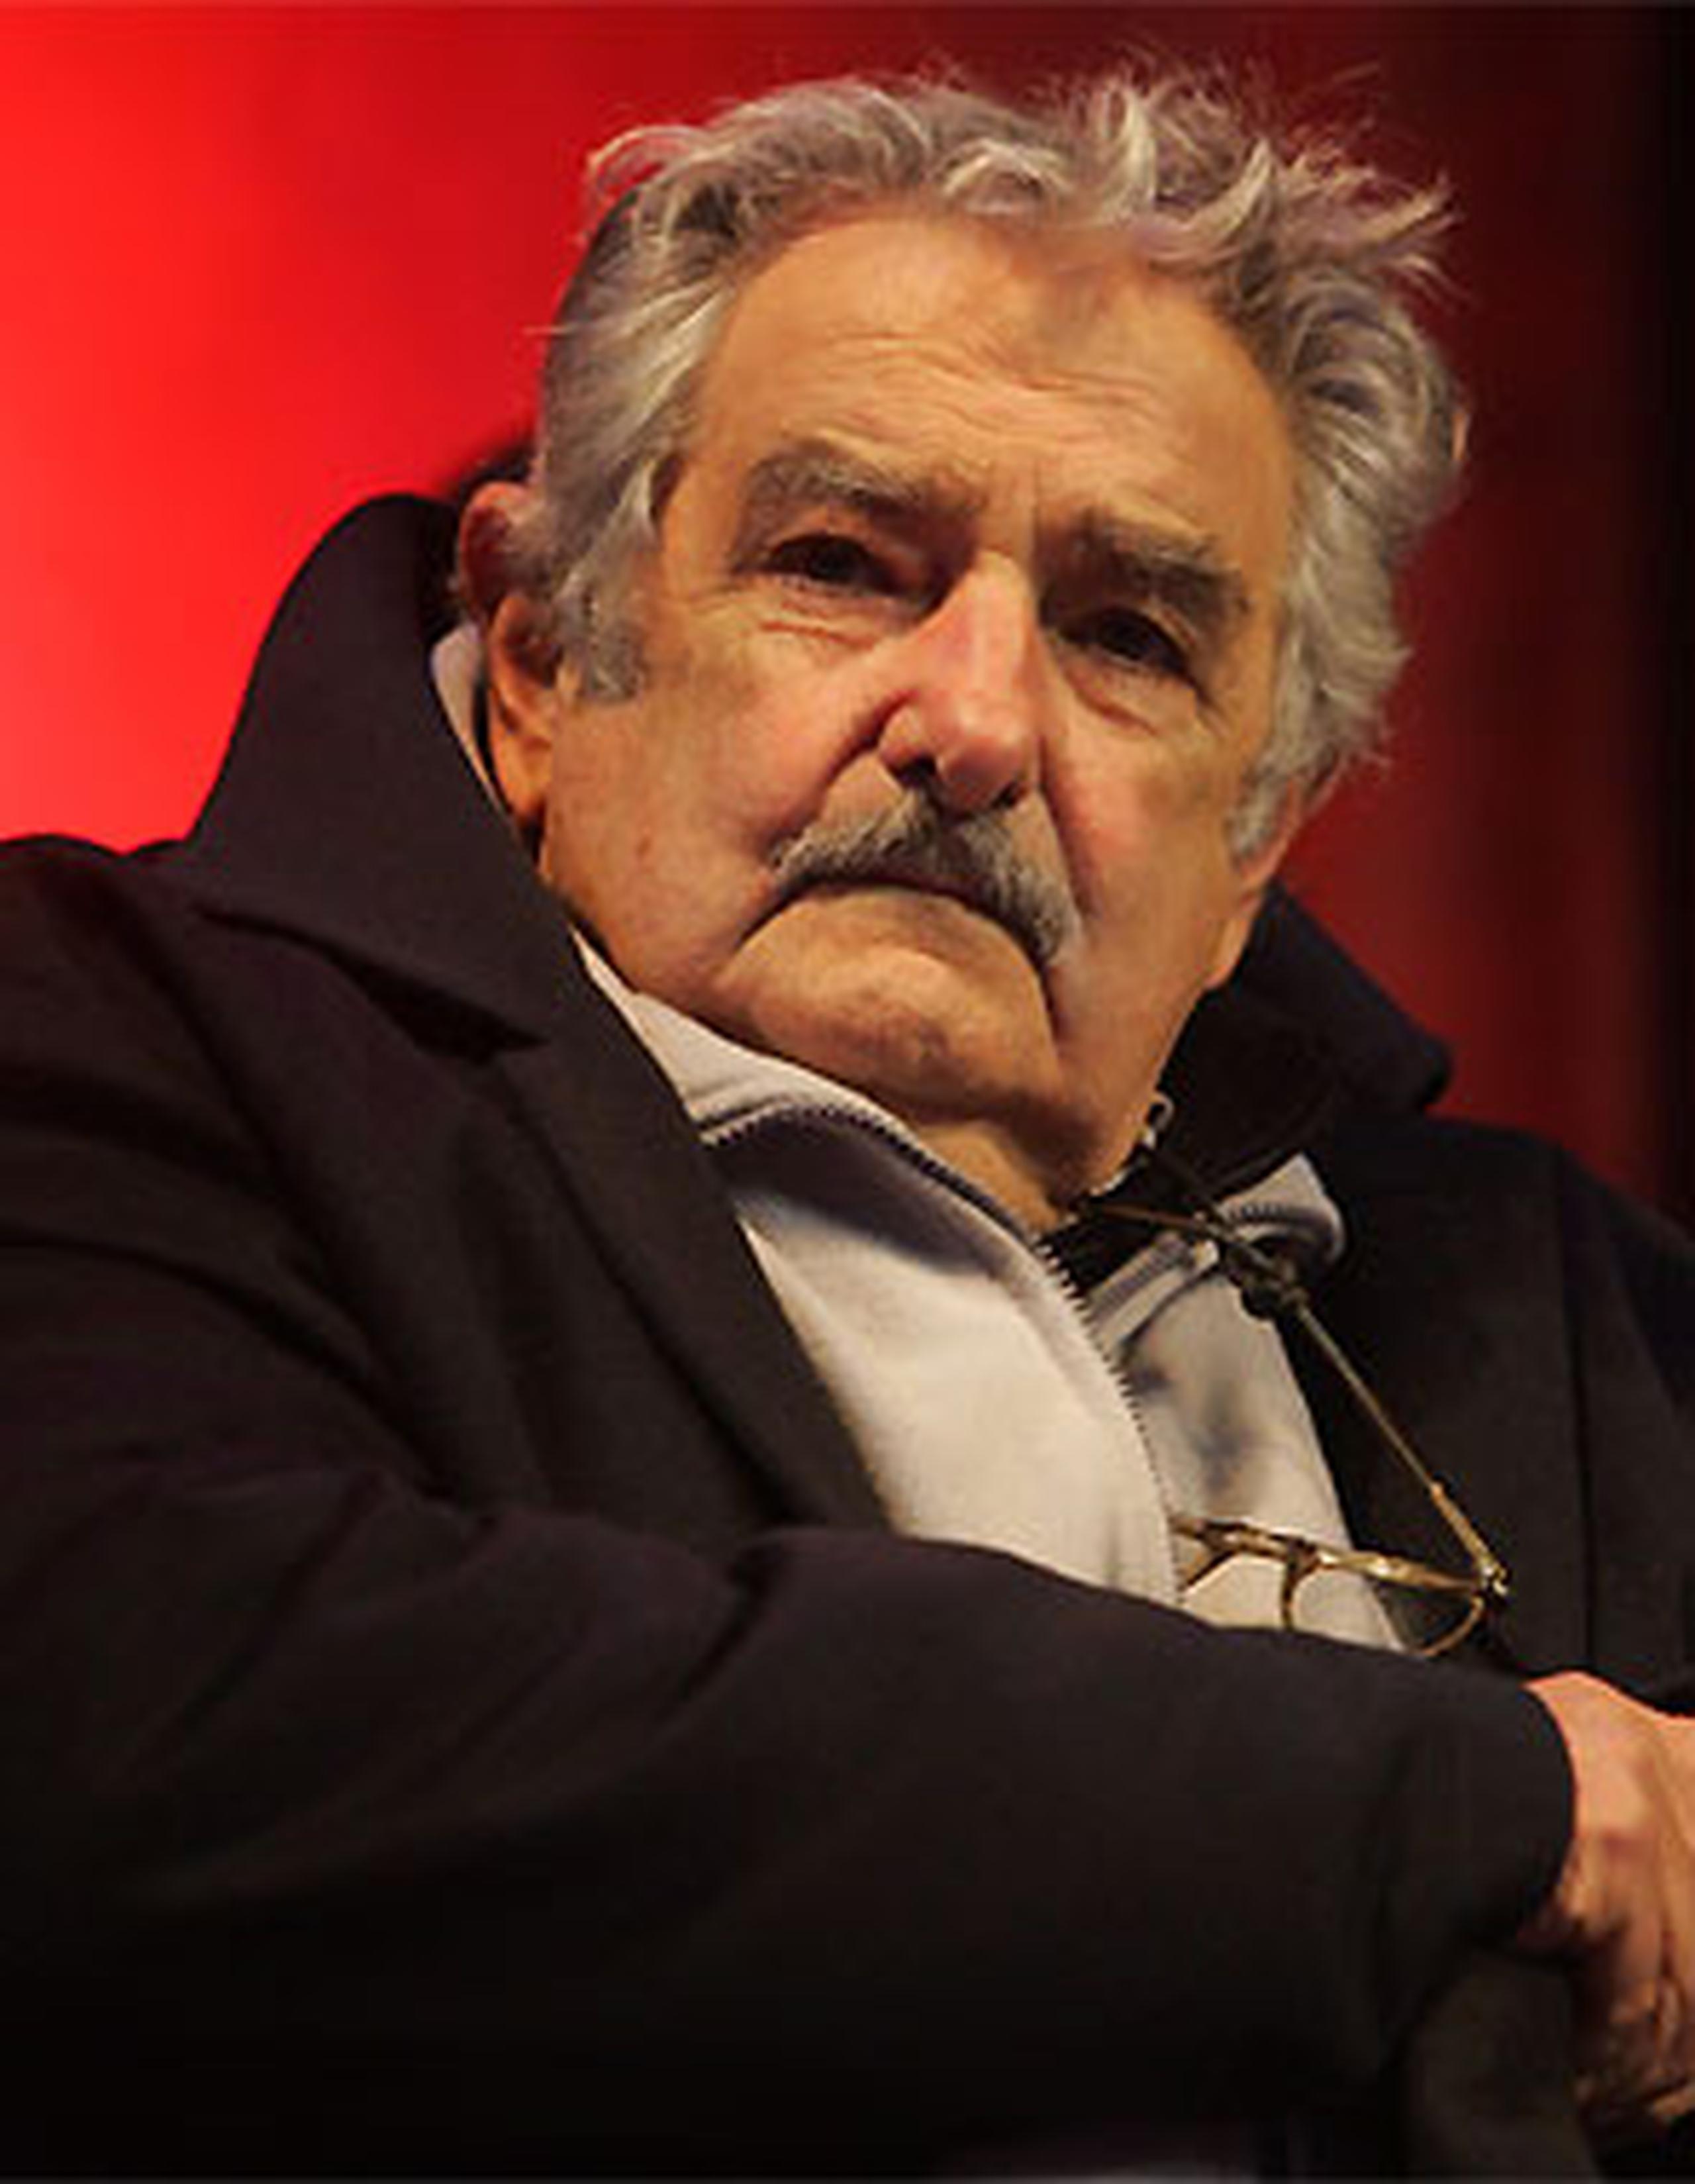 "Después entra a leer los diarios y los va pasando con el dedo", relató Mujica, antes de resaltar que "lo lindo" del aparato es que "podés leer sin lentes". (Archivo)